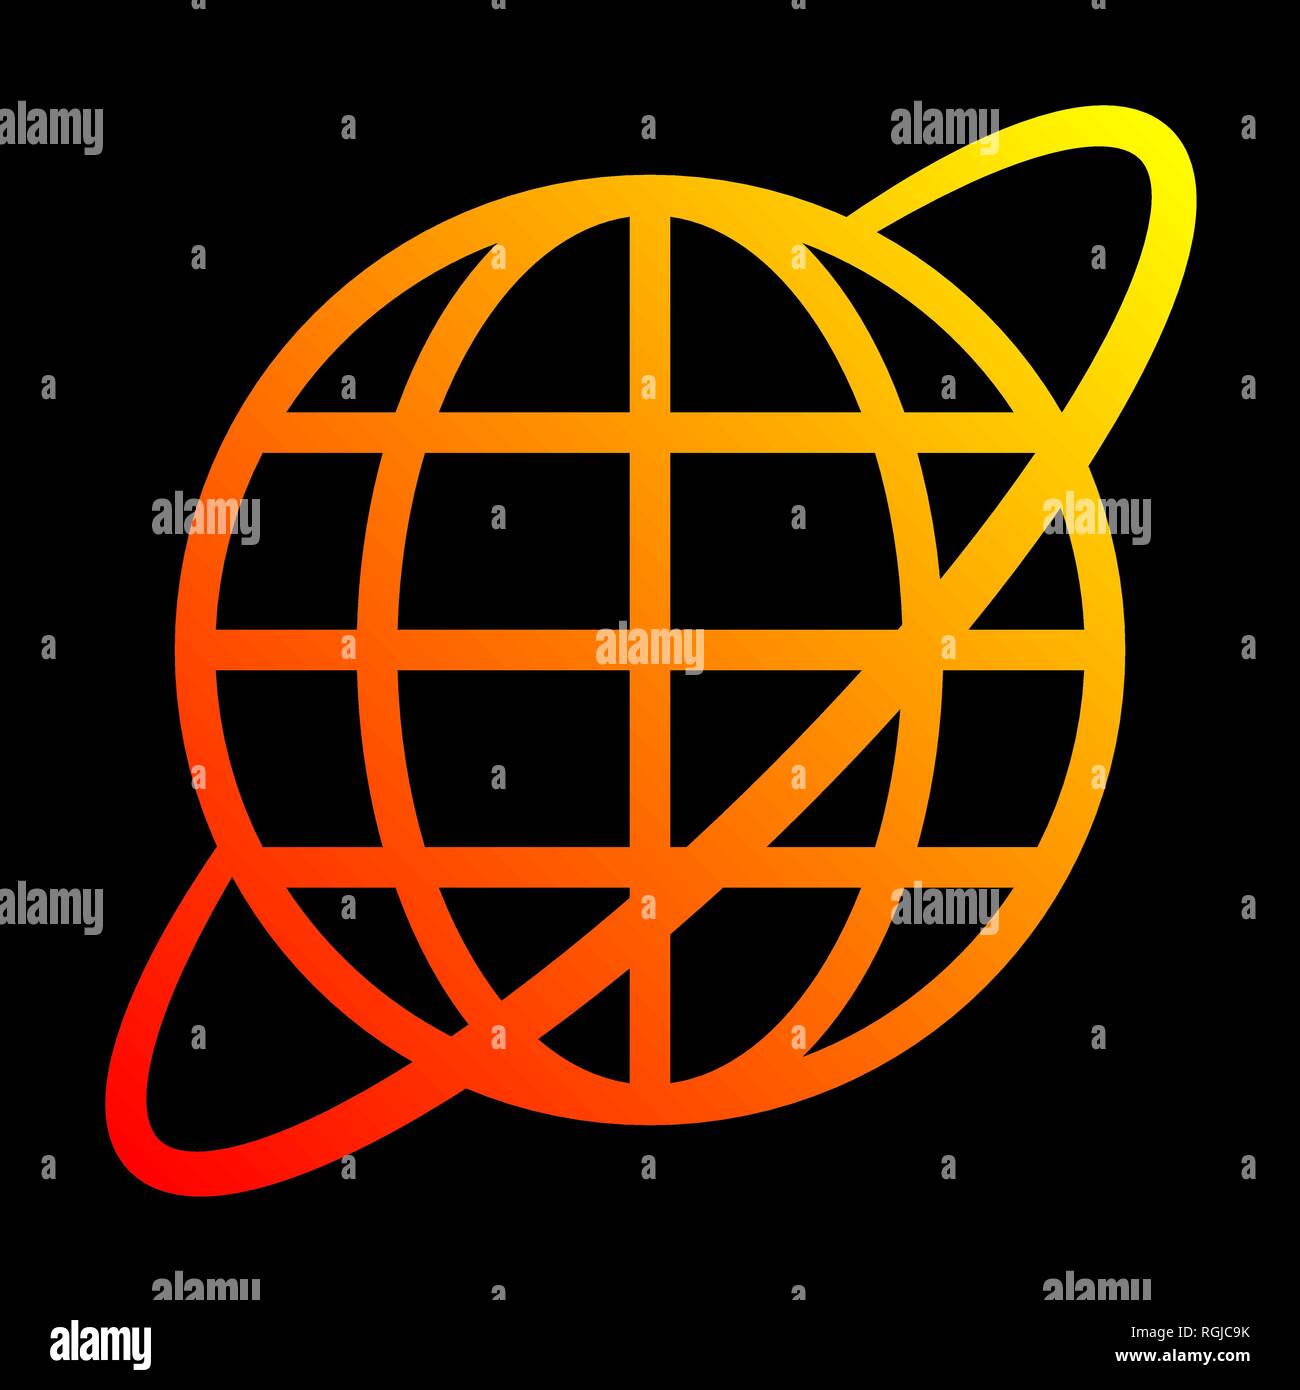 Globe terrestre avec l'icône orbite - jaune orange rouge dégradé, isolé - vector illustration Illustration de Vecteur